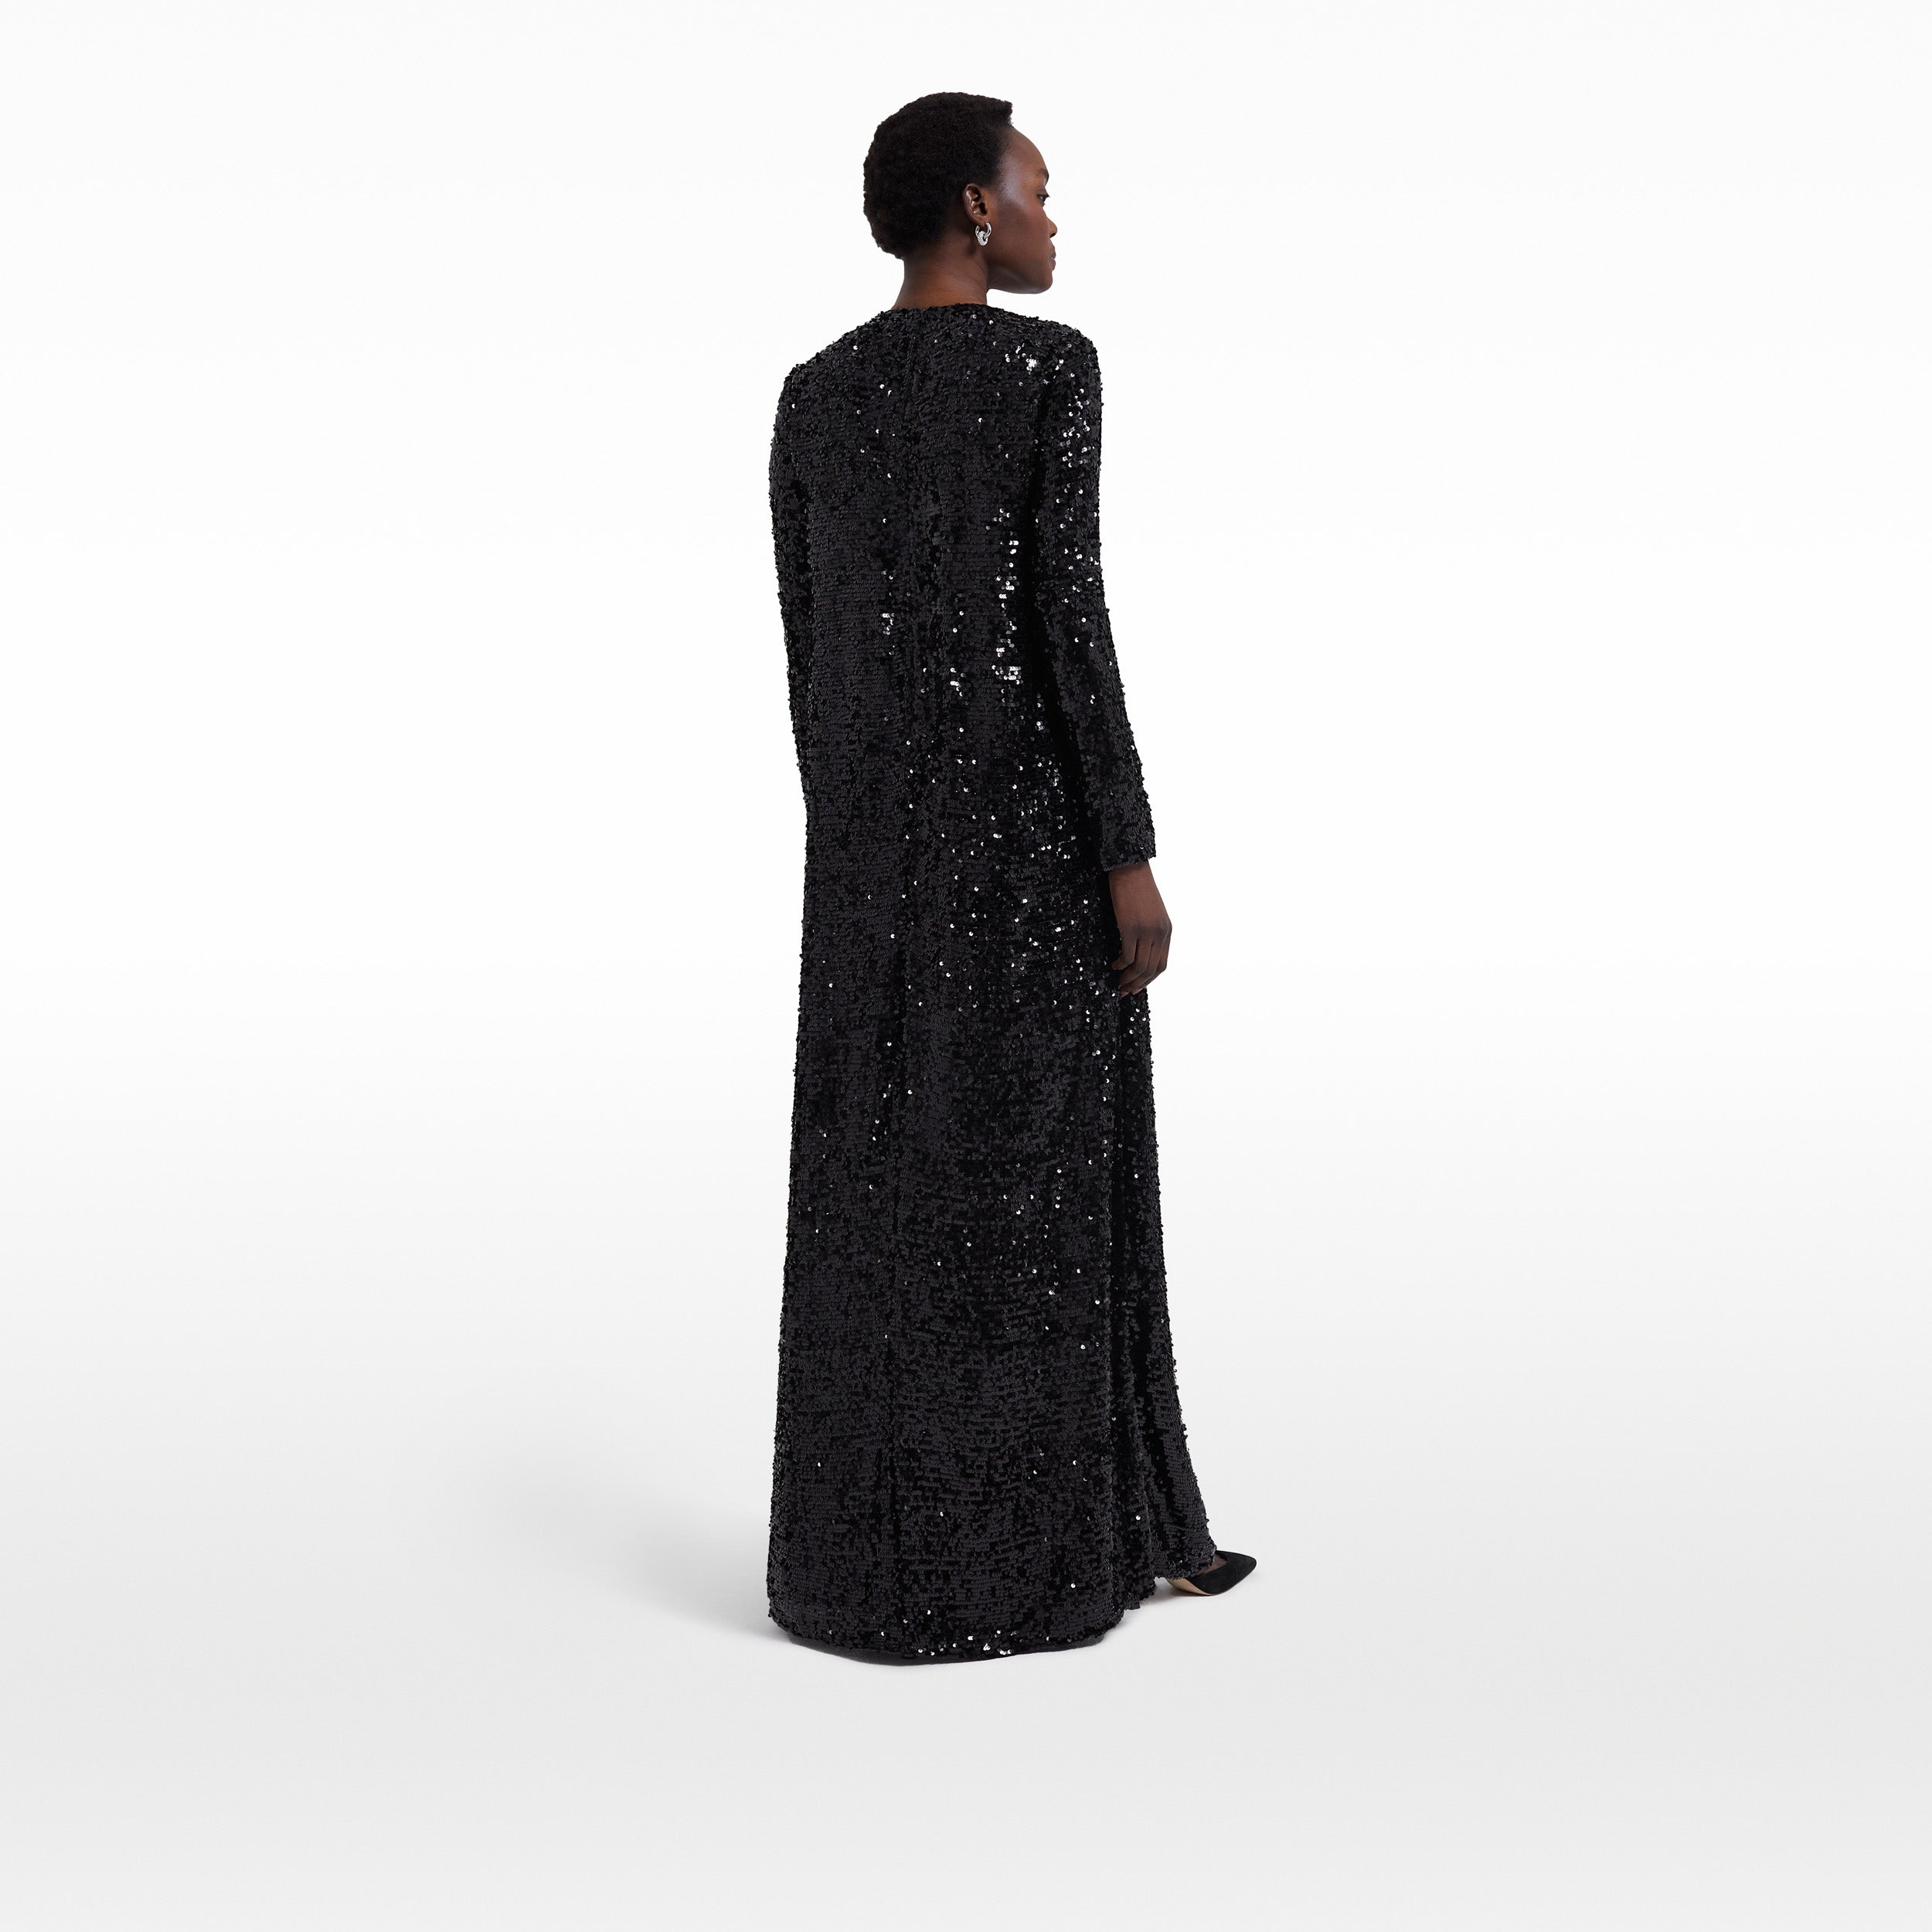 Naima Black Long Dress